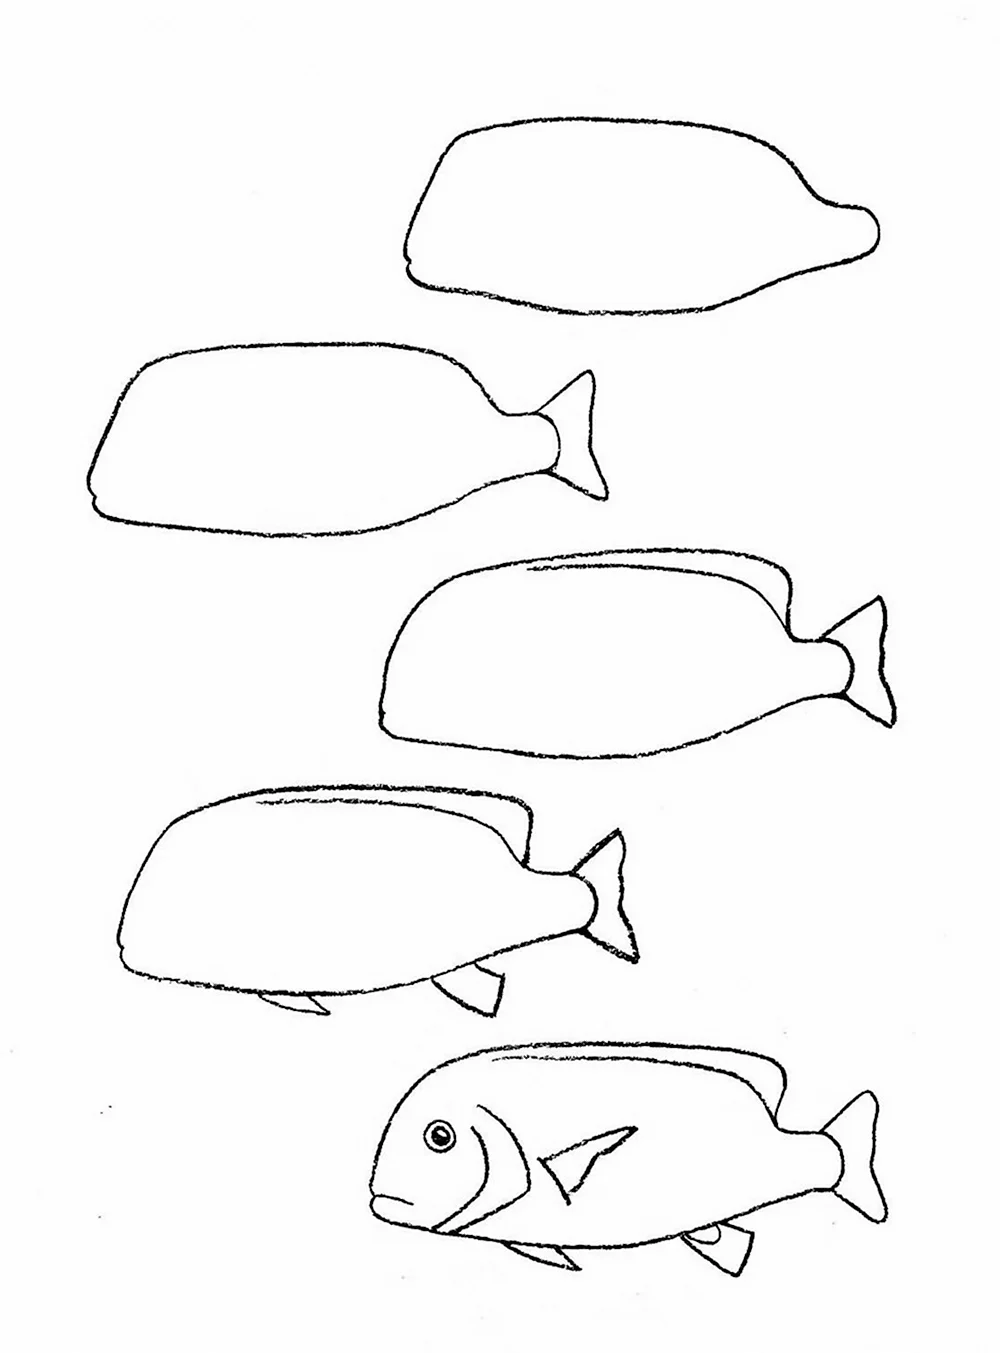 Поэтапное рисование рыбы